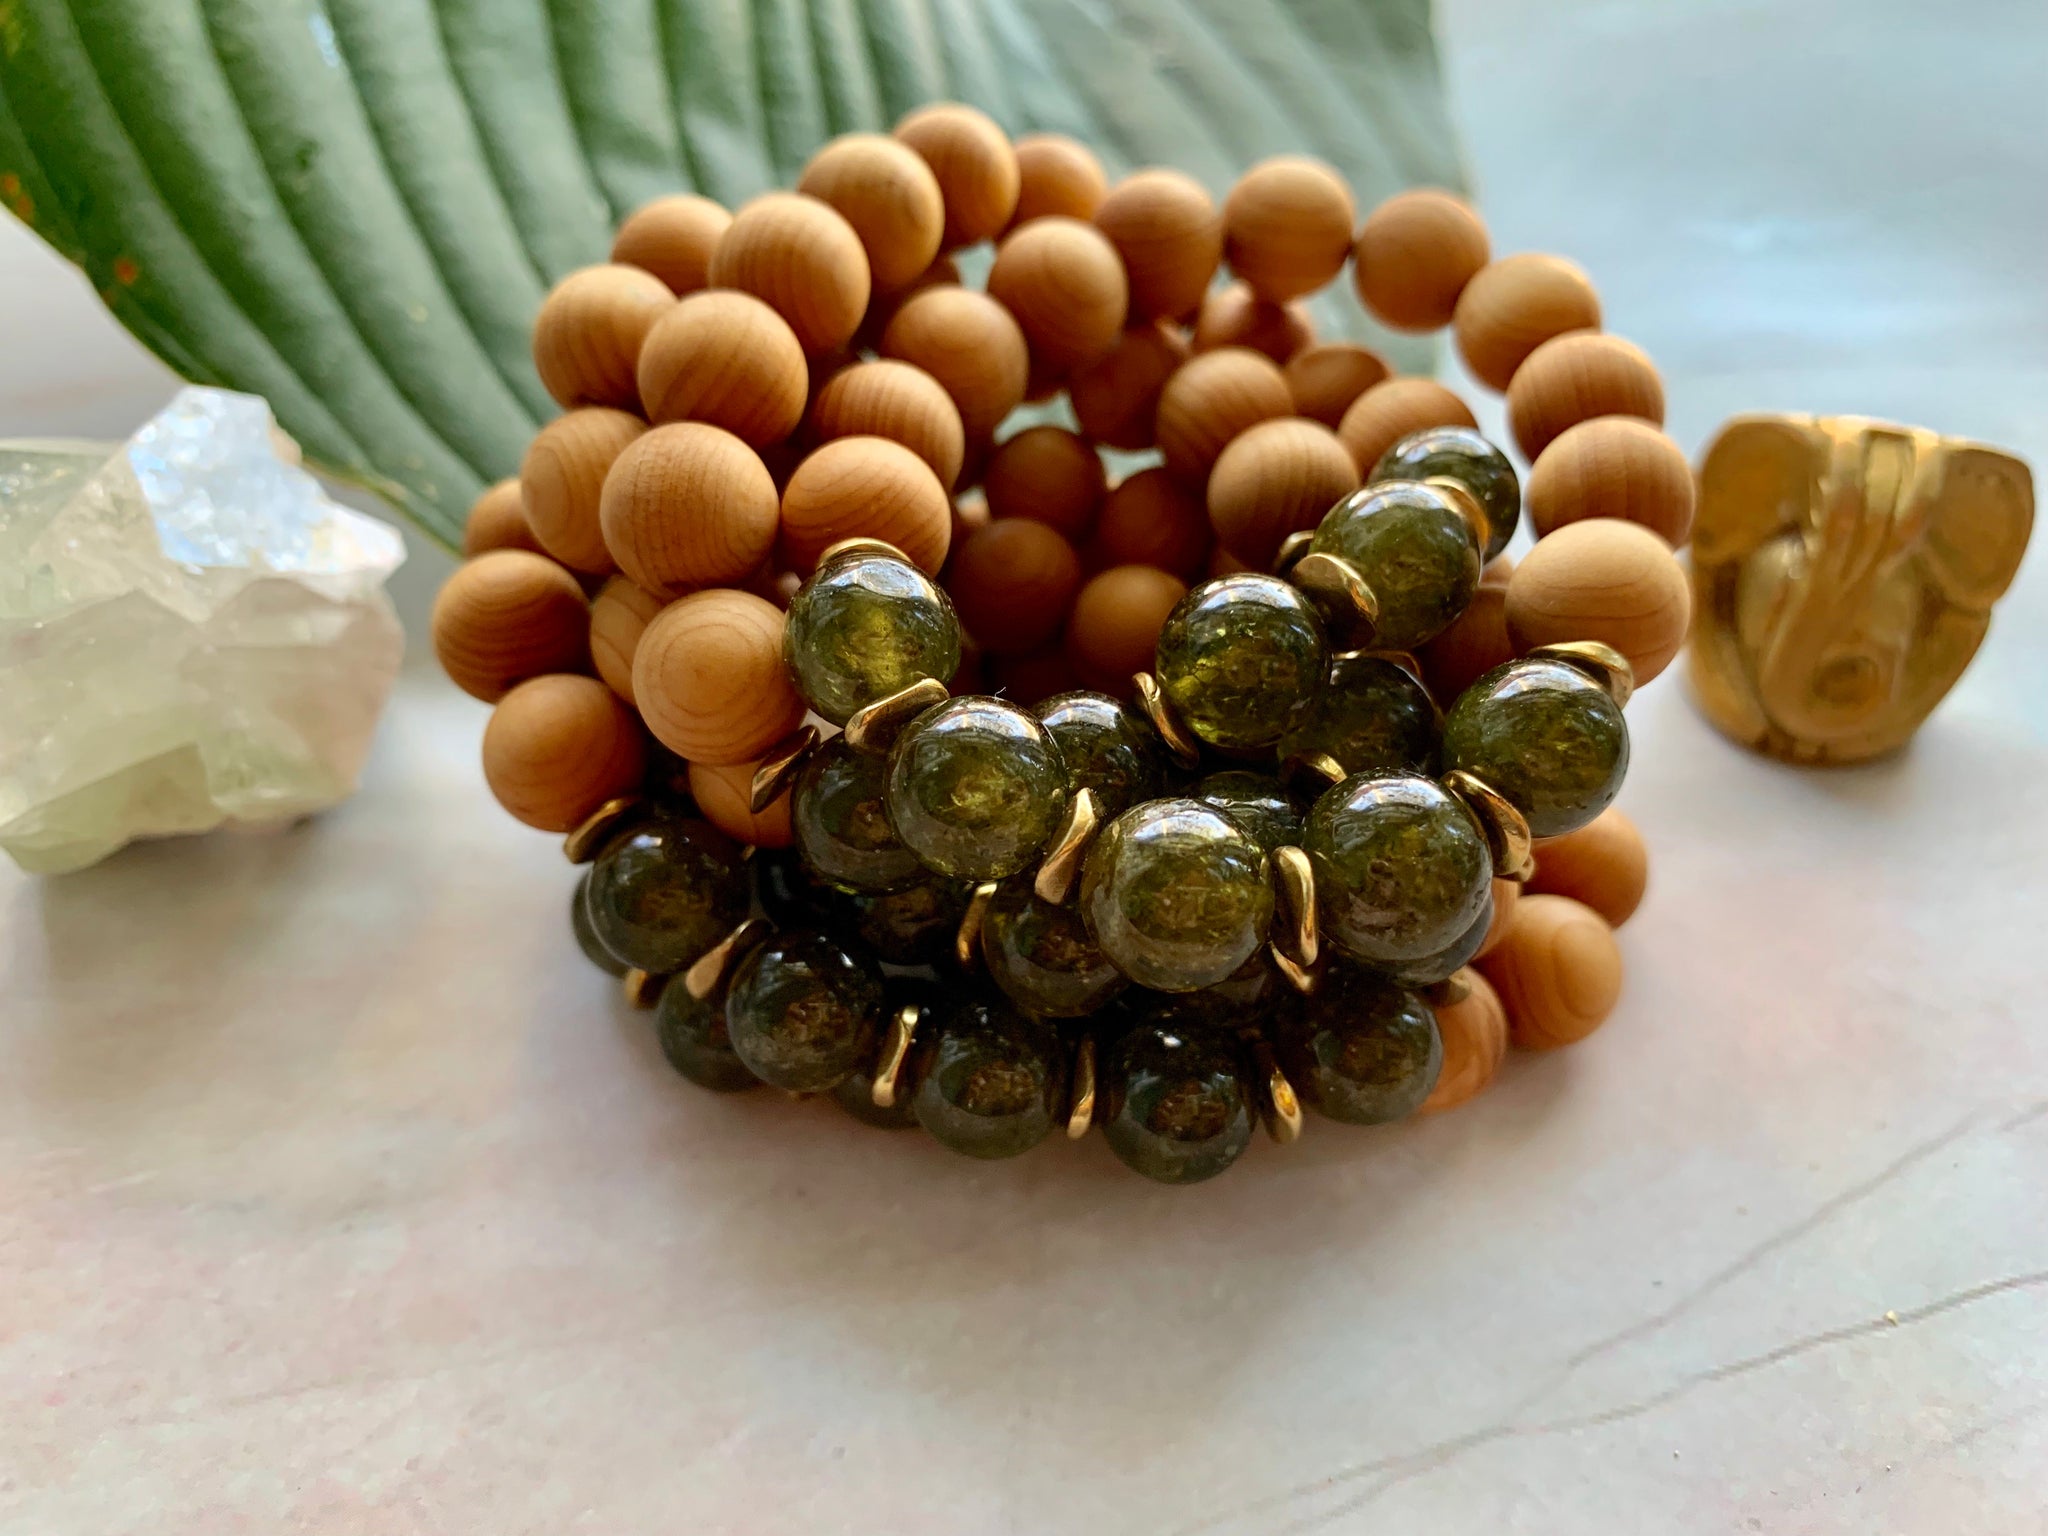 Carnelian stone bracelet | Healing crystal bead bracelet